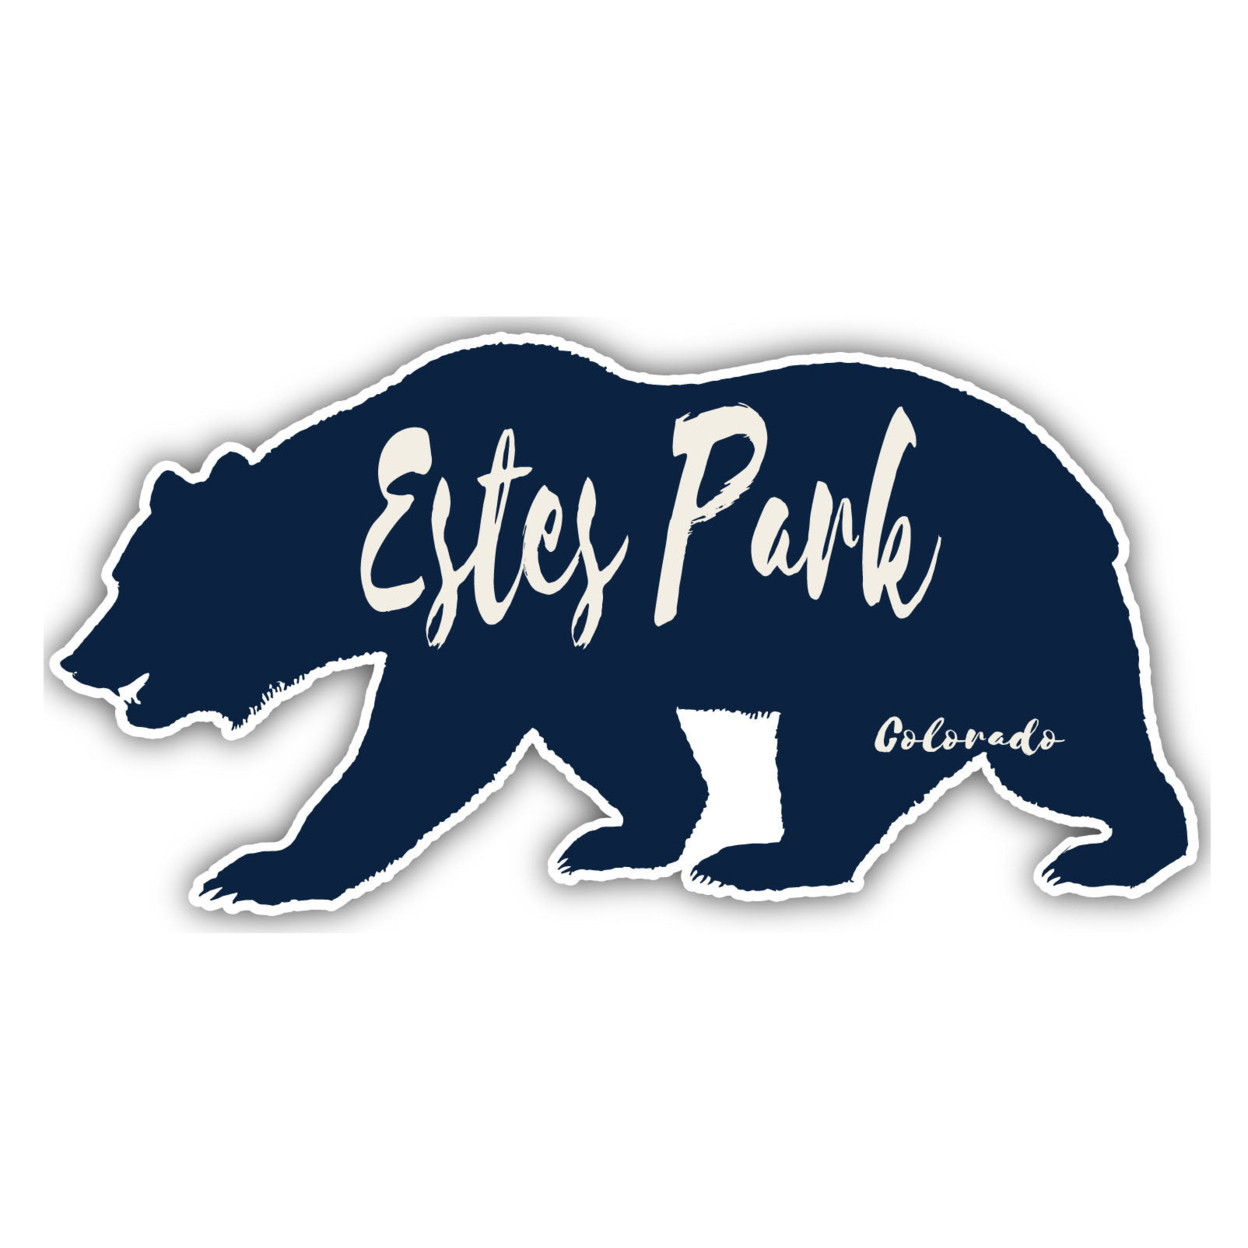 Estes Park Colorado Souvenir Decorative Stickers (Choose Theme And Size) - 4-Pack, 6-Inch, Adventures Awaits